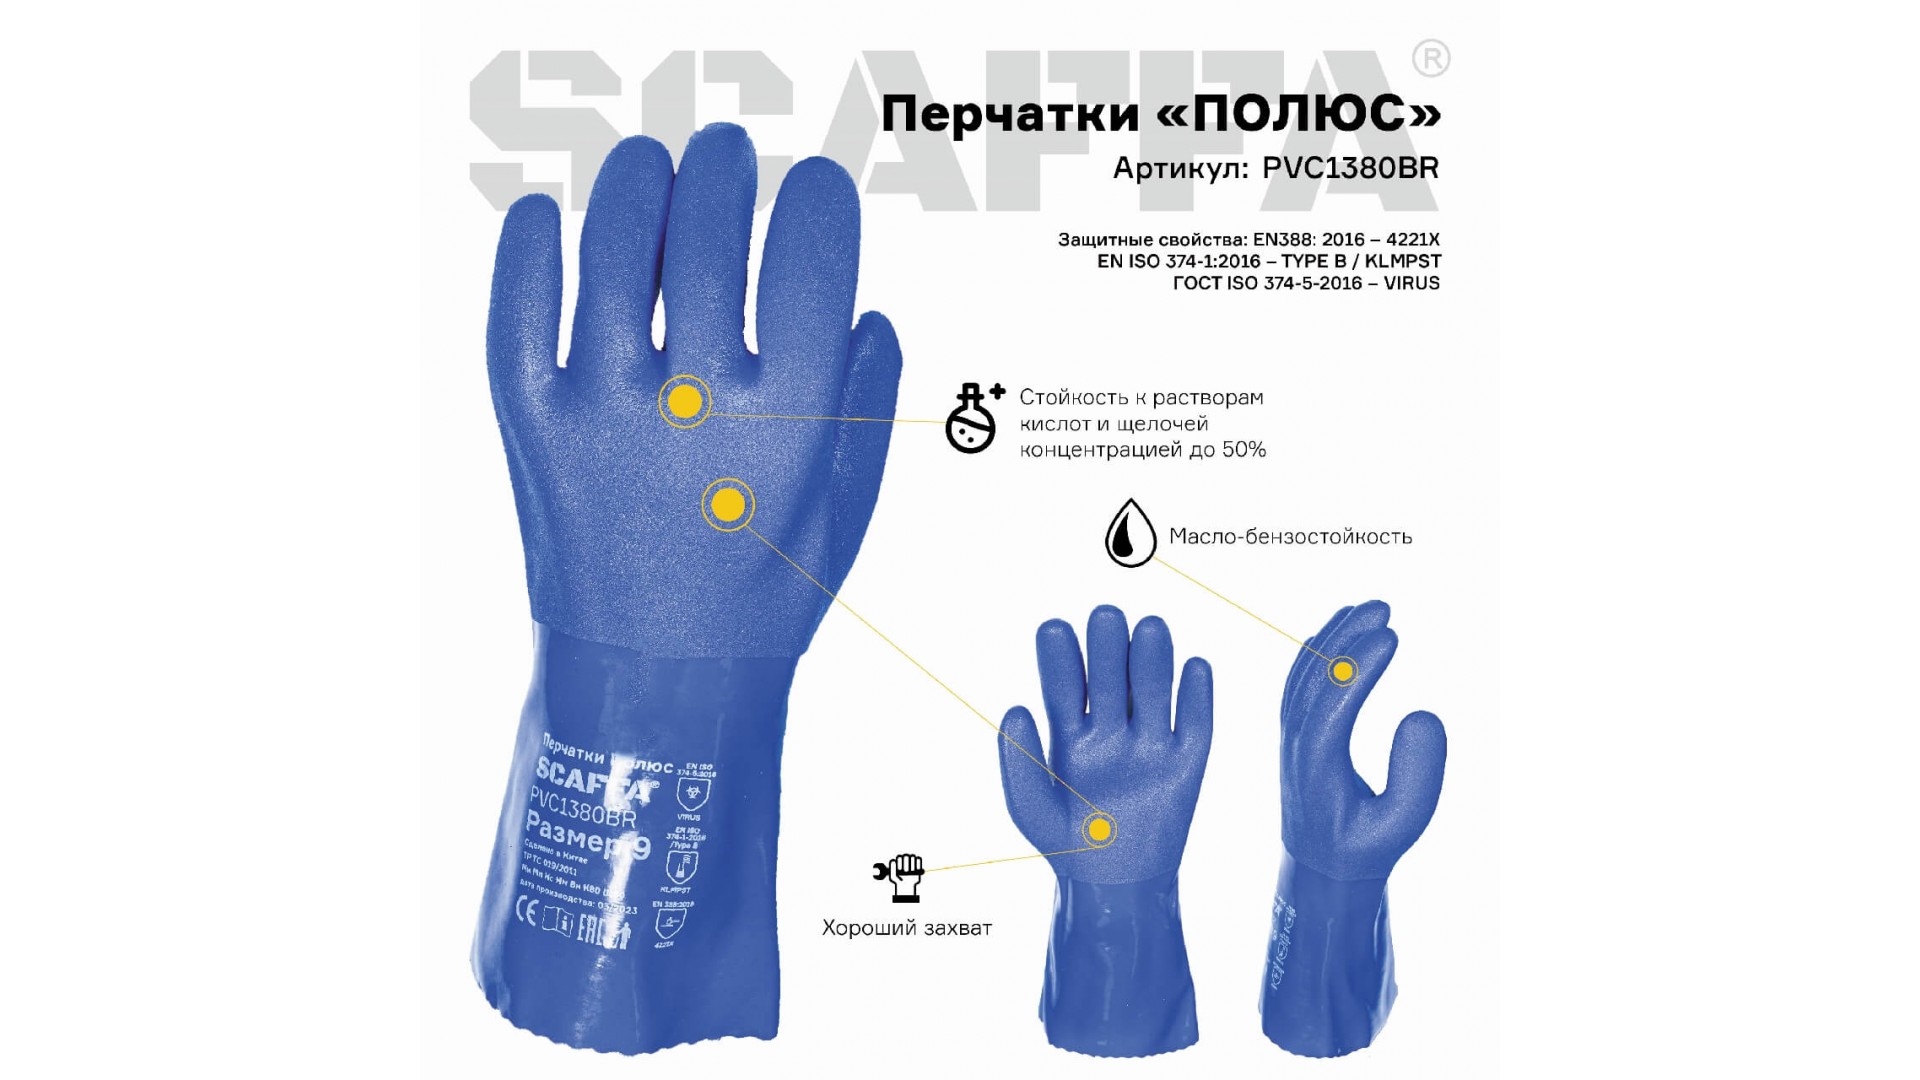 Перчатки ПОЛЮС для защиты от химического воздействия